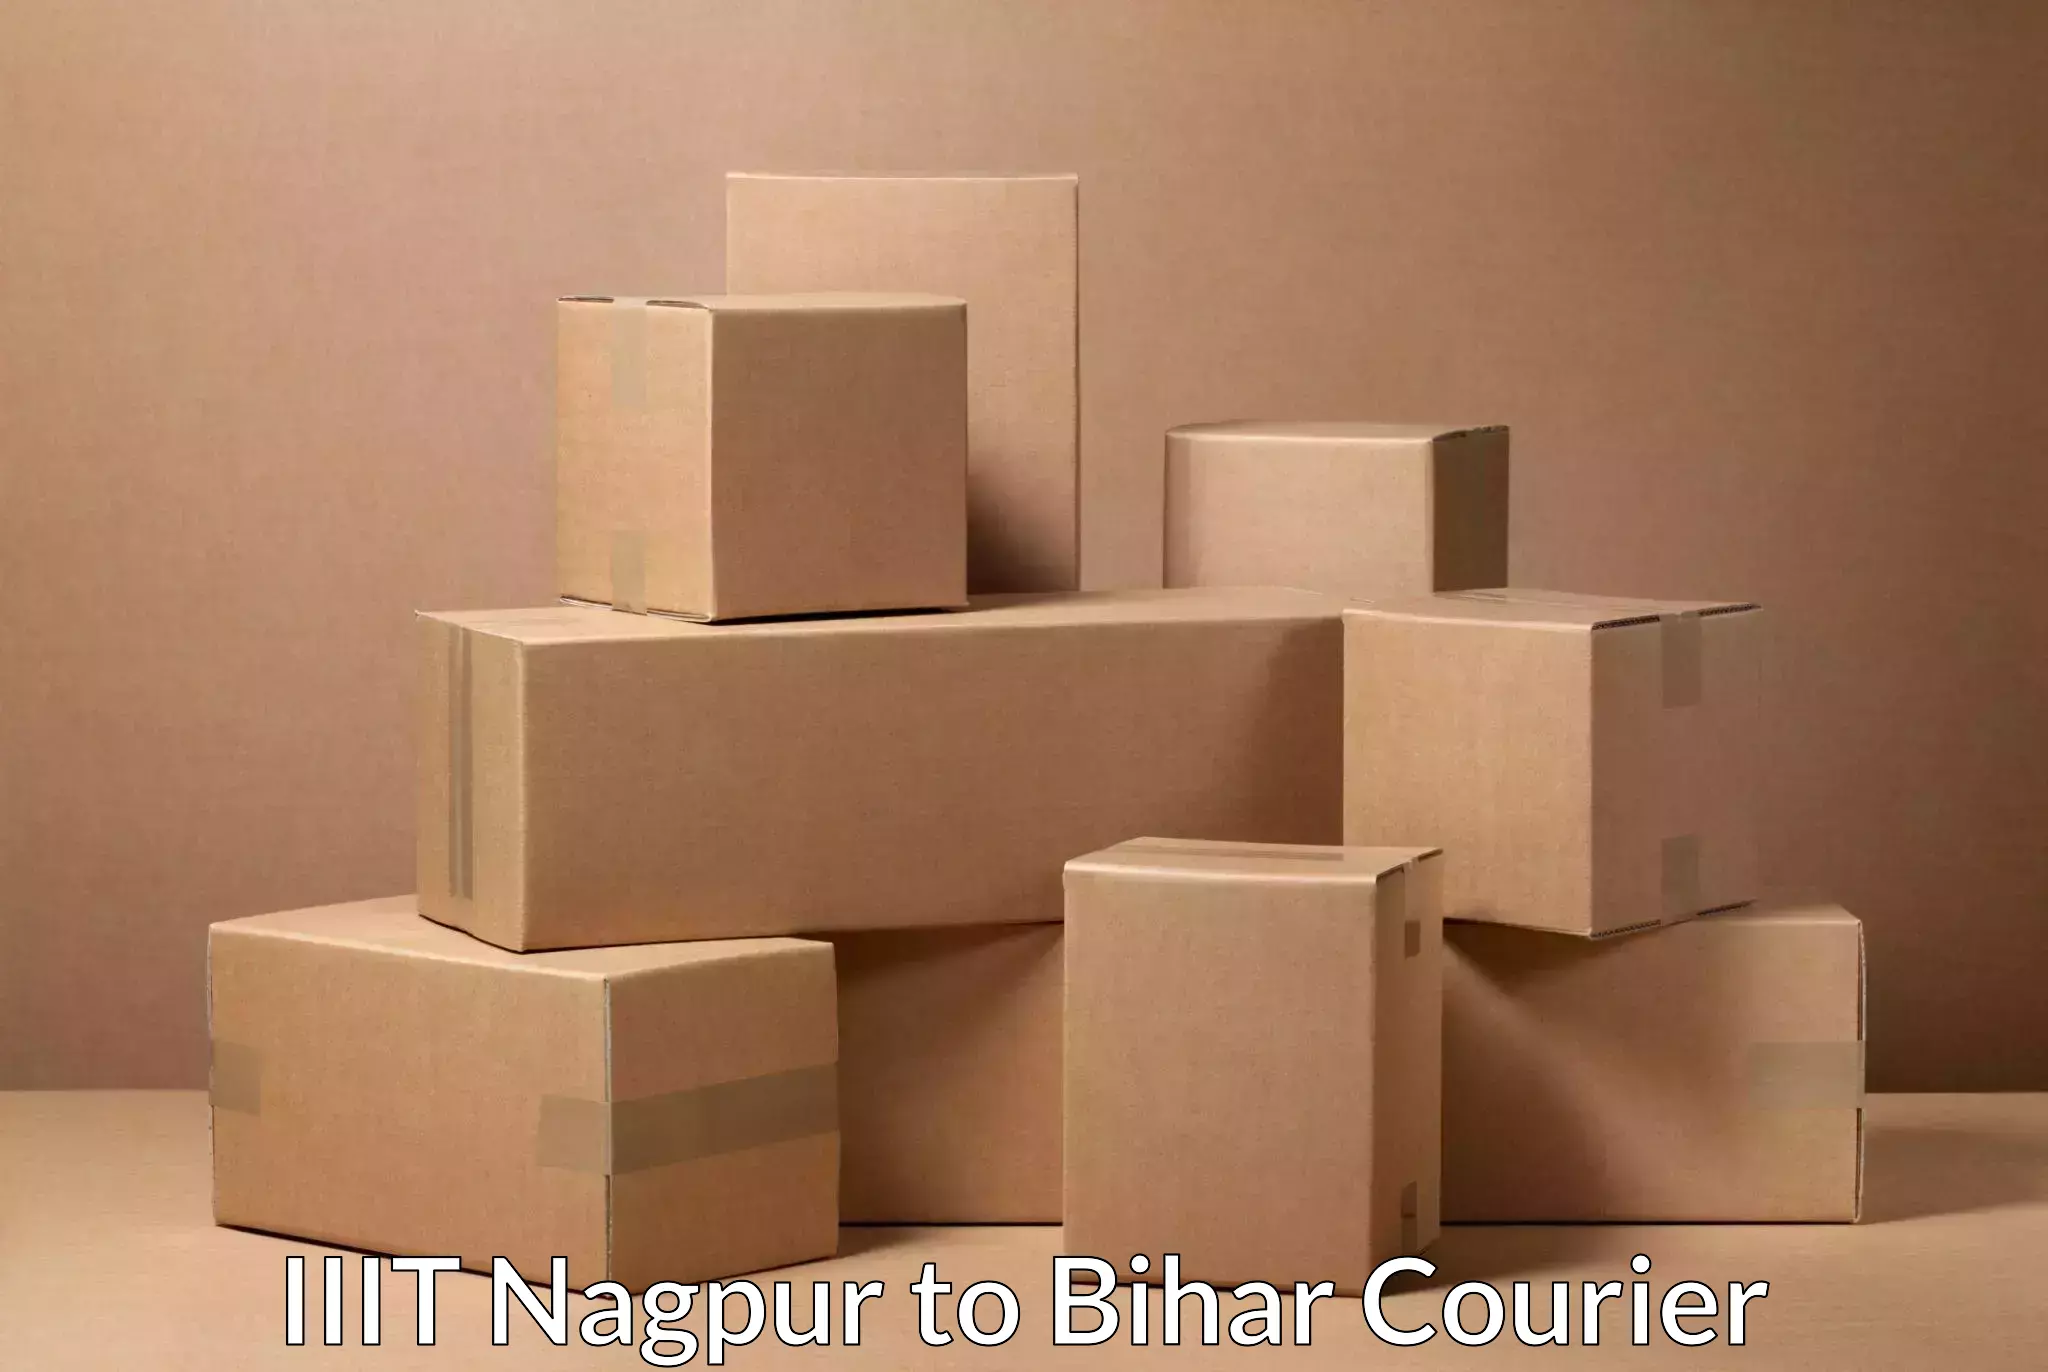 Flexible delivery scheduling in IIIT Nagpur to Bihar